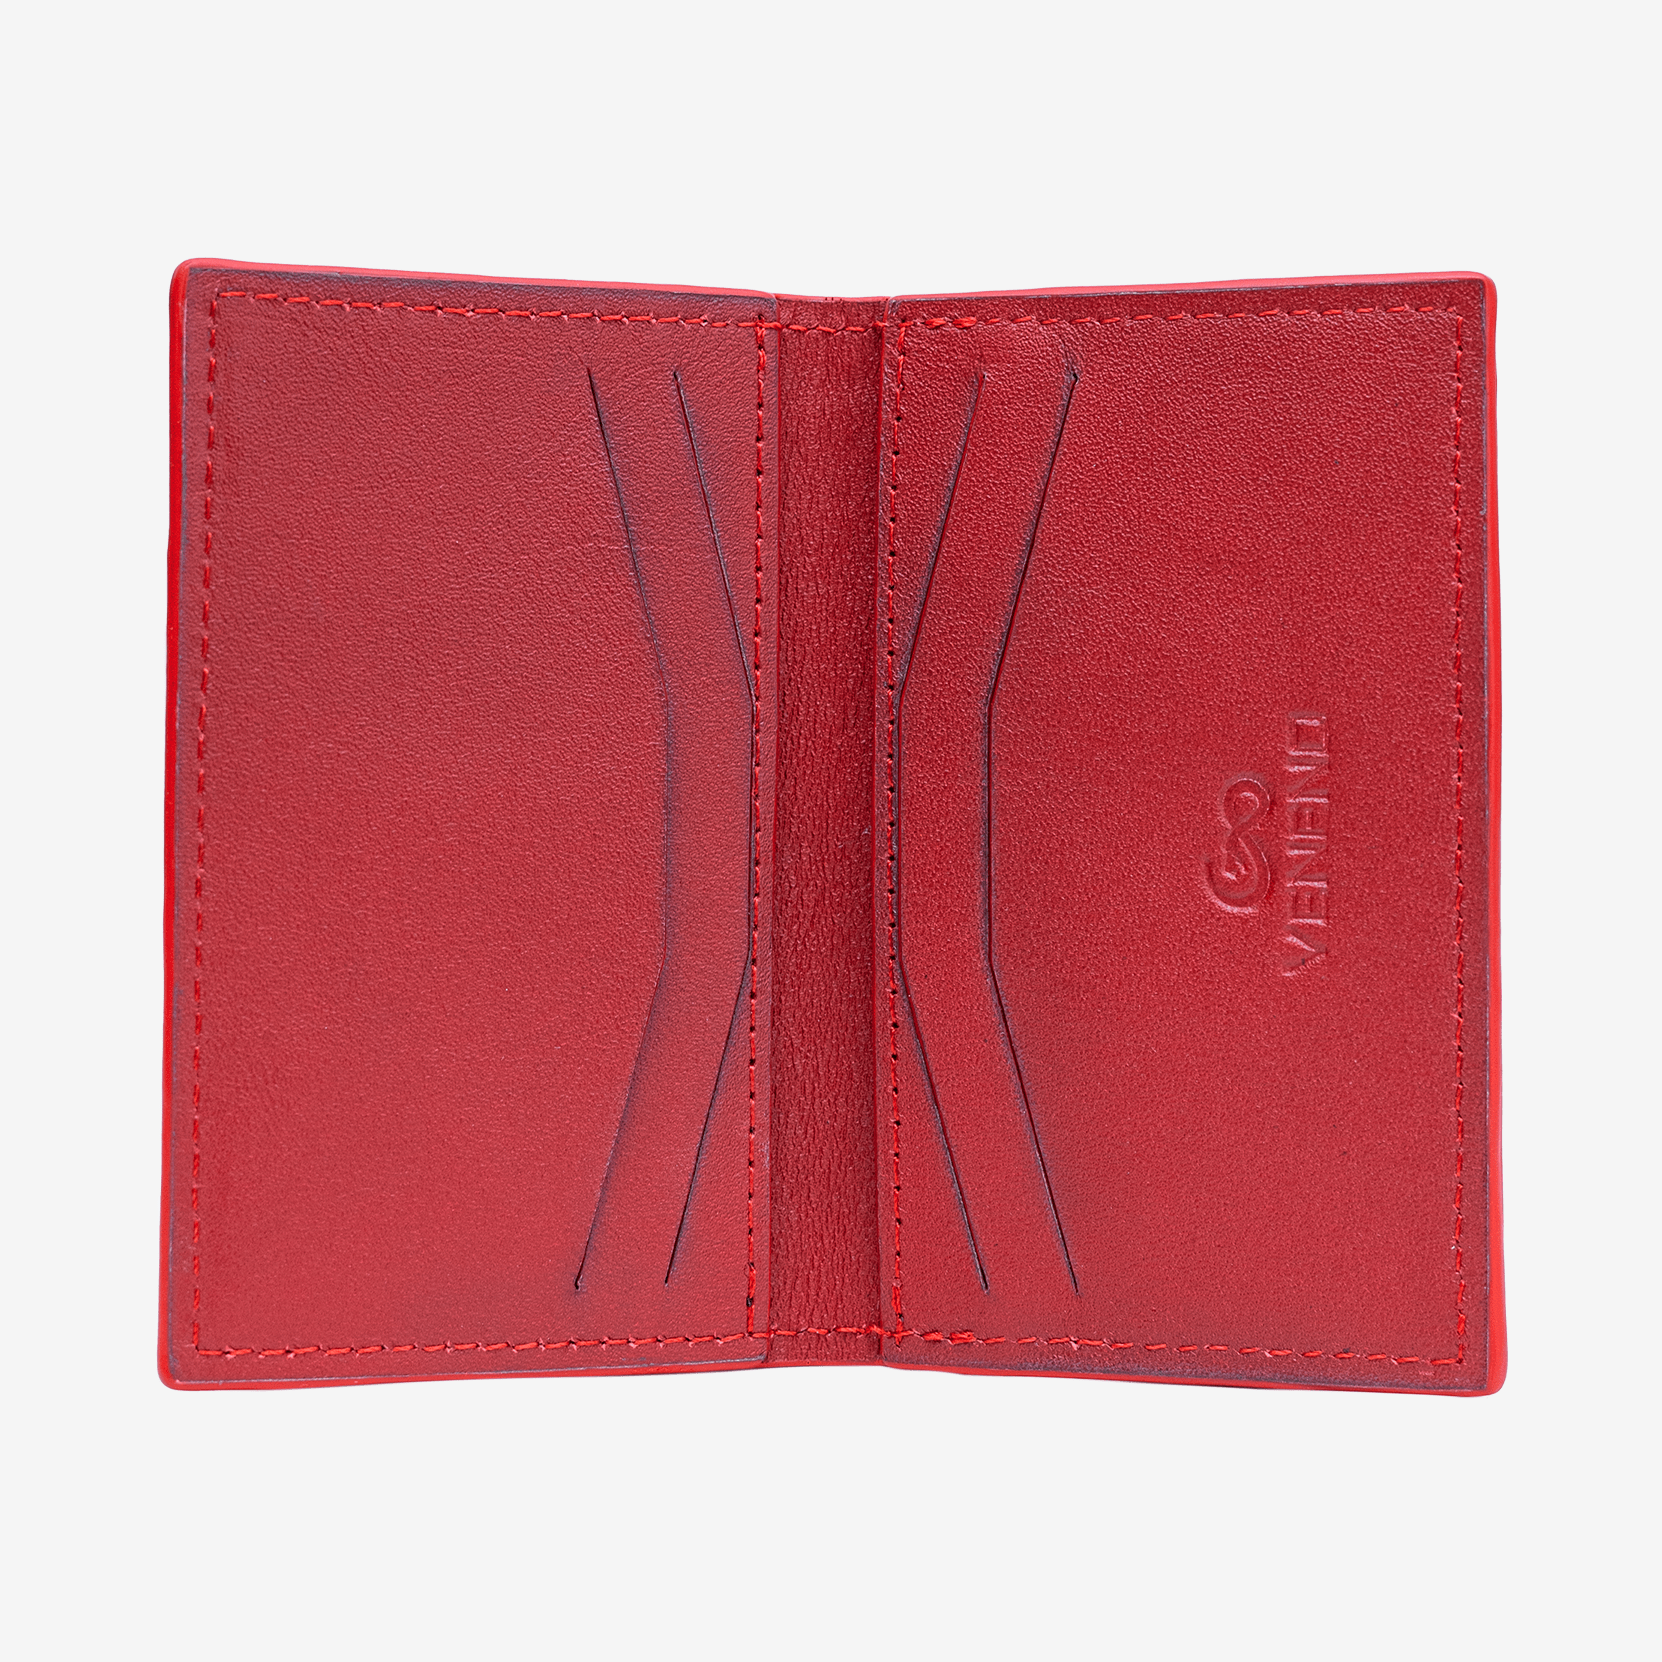 Veneno Leather Goods Tarjetero Vertical "Huracán" Red Velvet